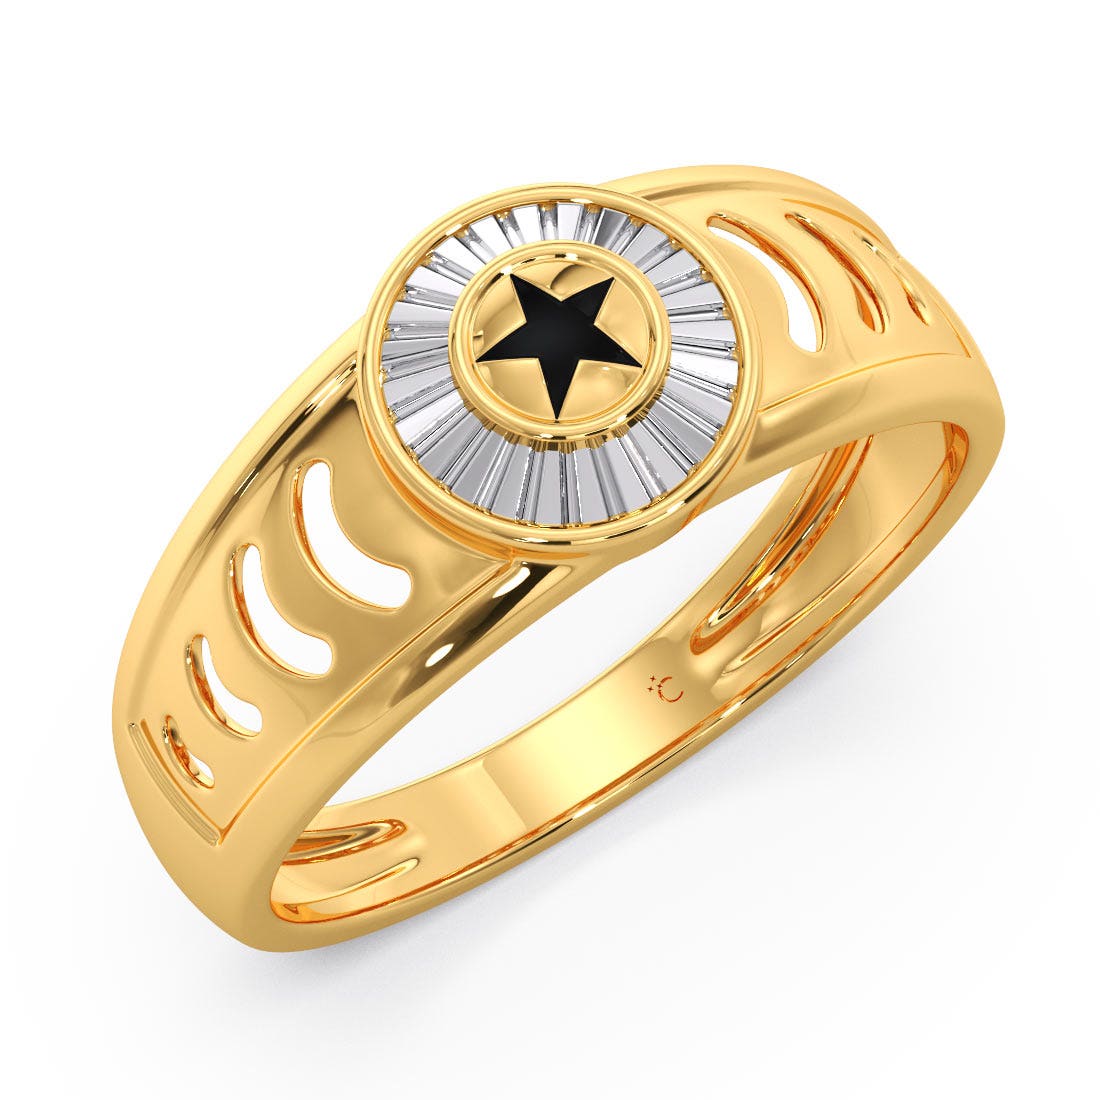 Gold & Diamond Ring For Men Online | Latest Men Rings Designs - KuberBox.com-totobed.com.vn